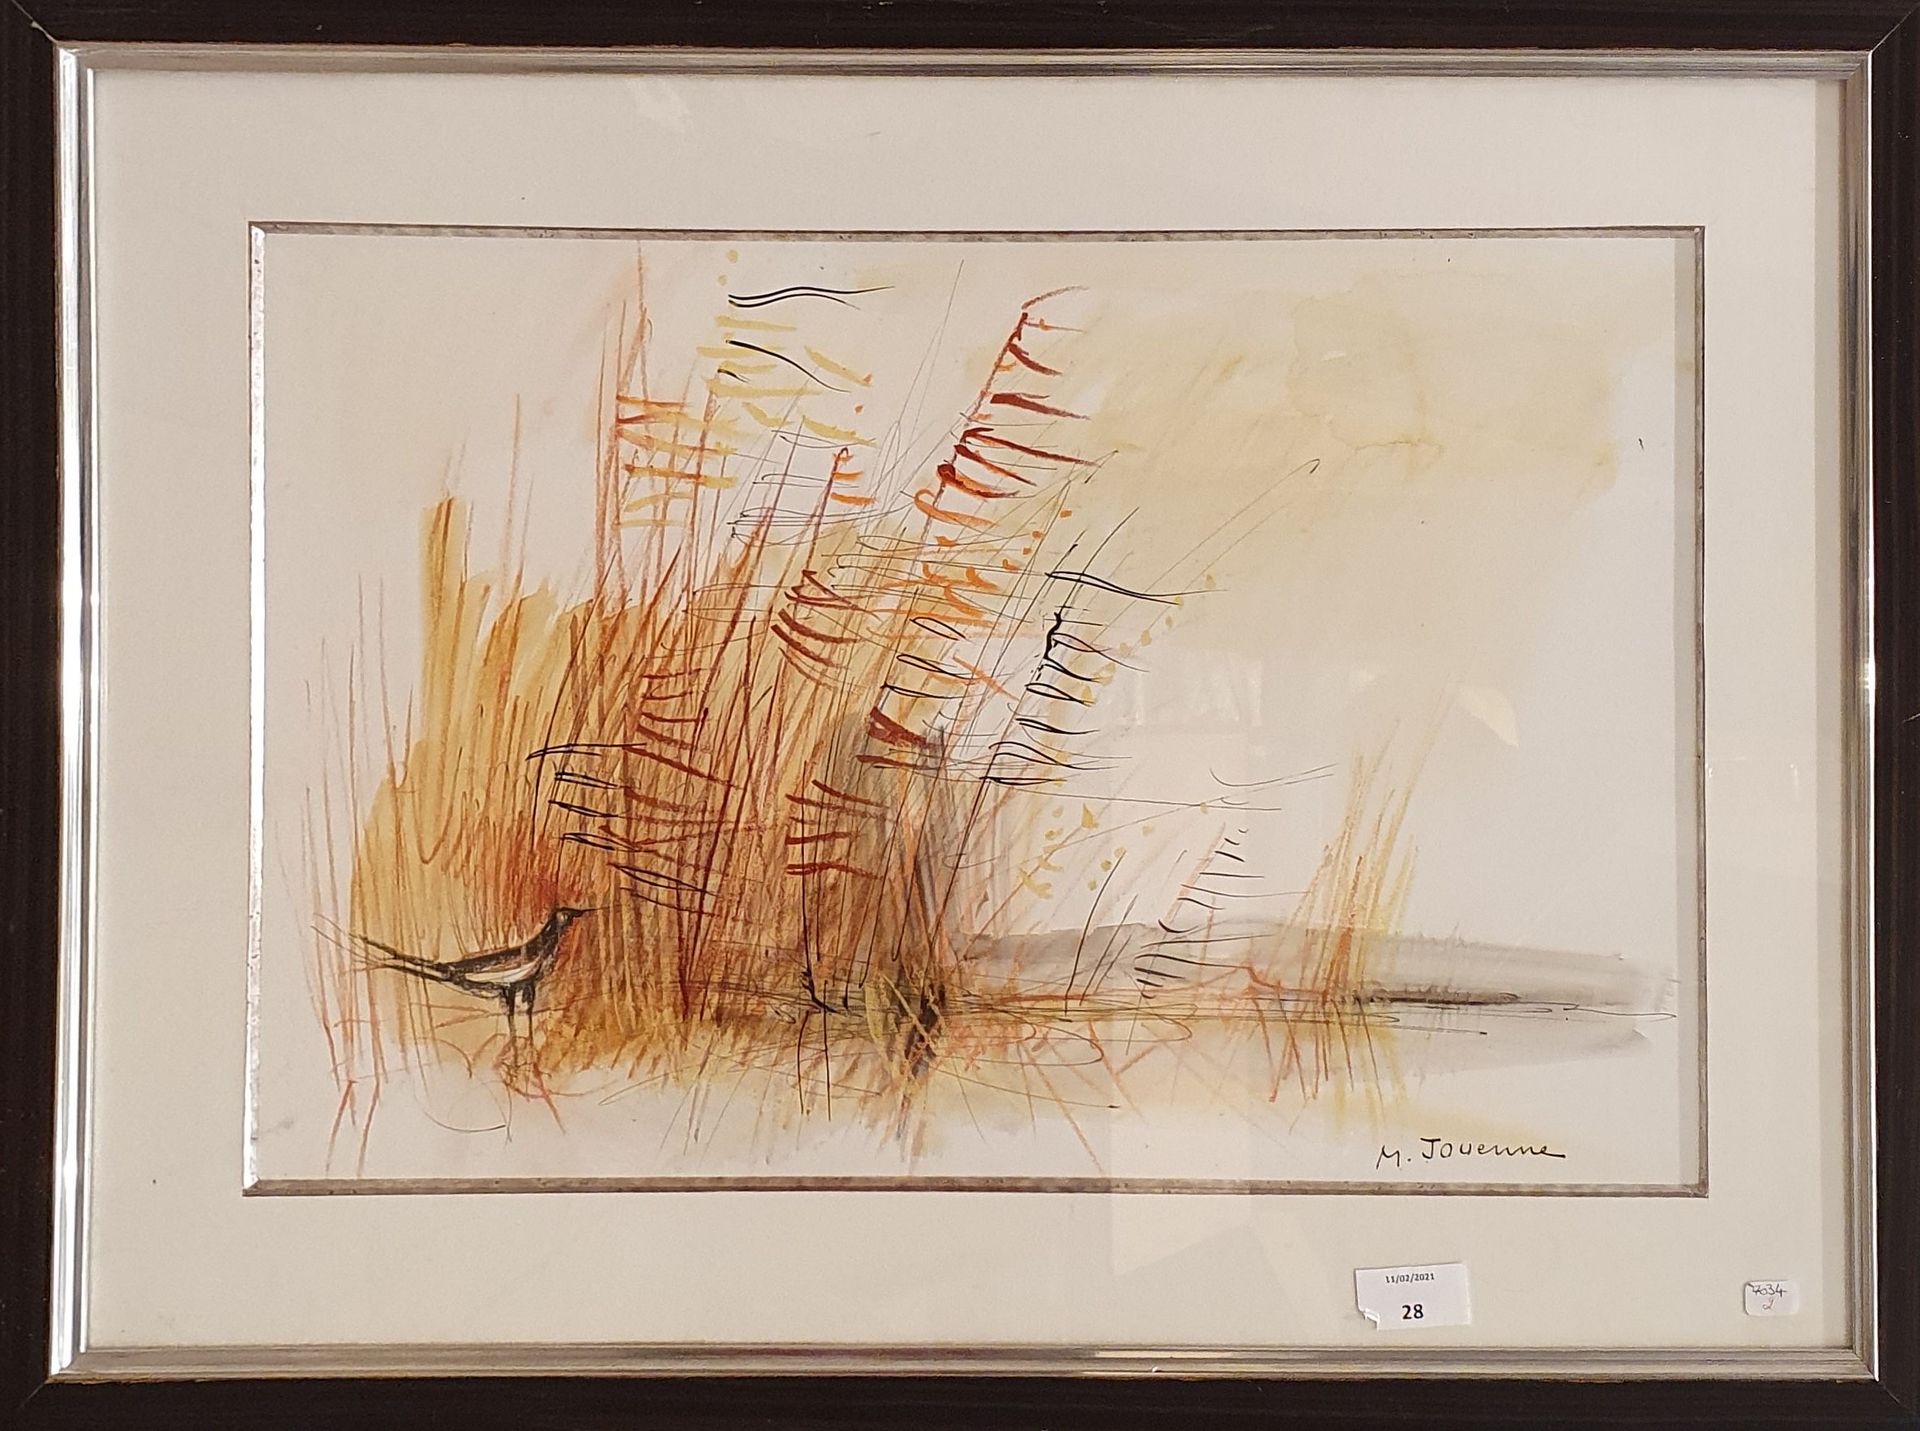 Null JOUENNE Michel (1933-2021)

景观与喜鹊

纸上墨水、水彩和铅笔，右下方有签名

轻微污损

33 x 51 cm at s&hellip;